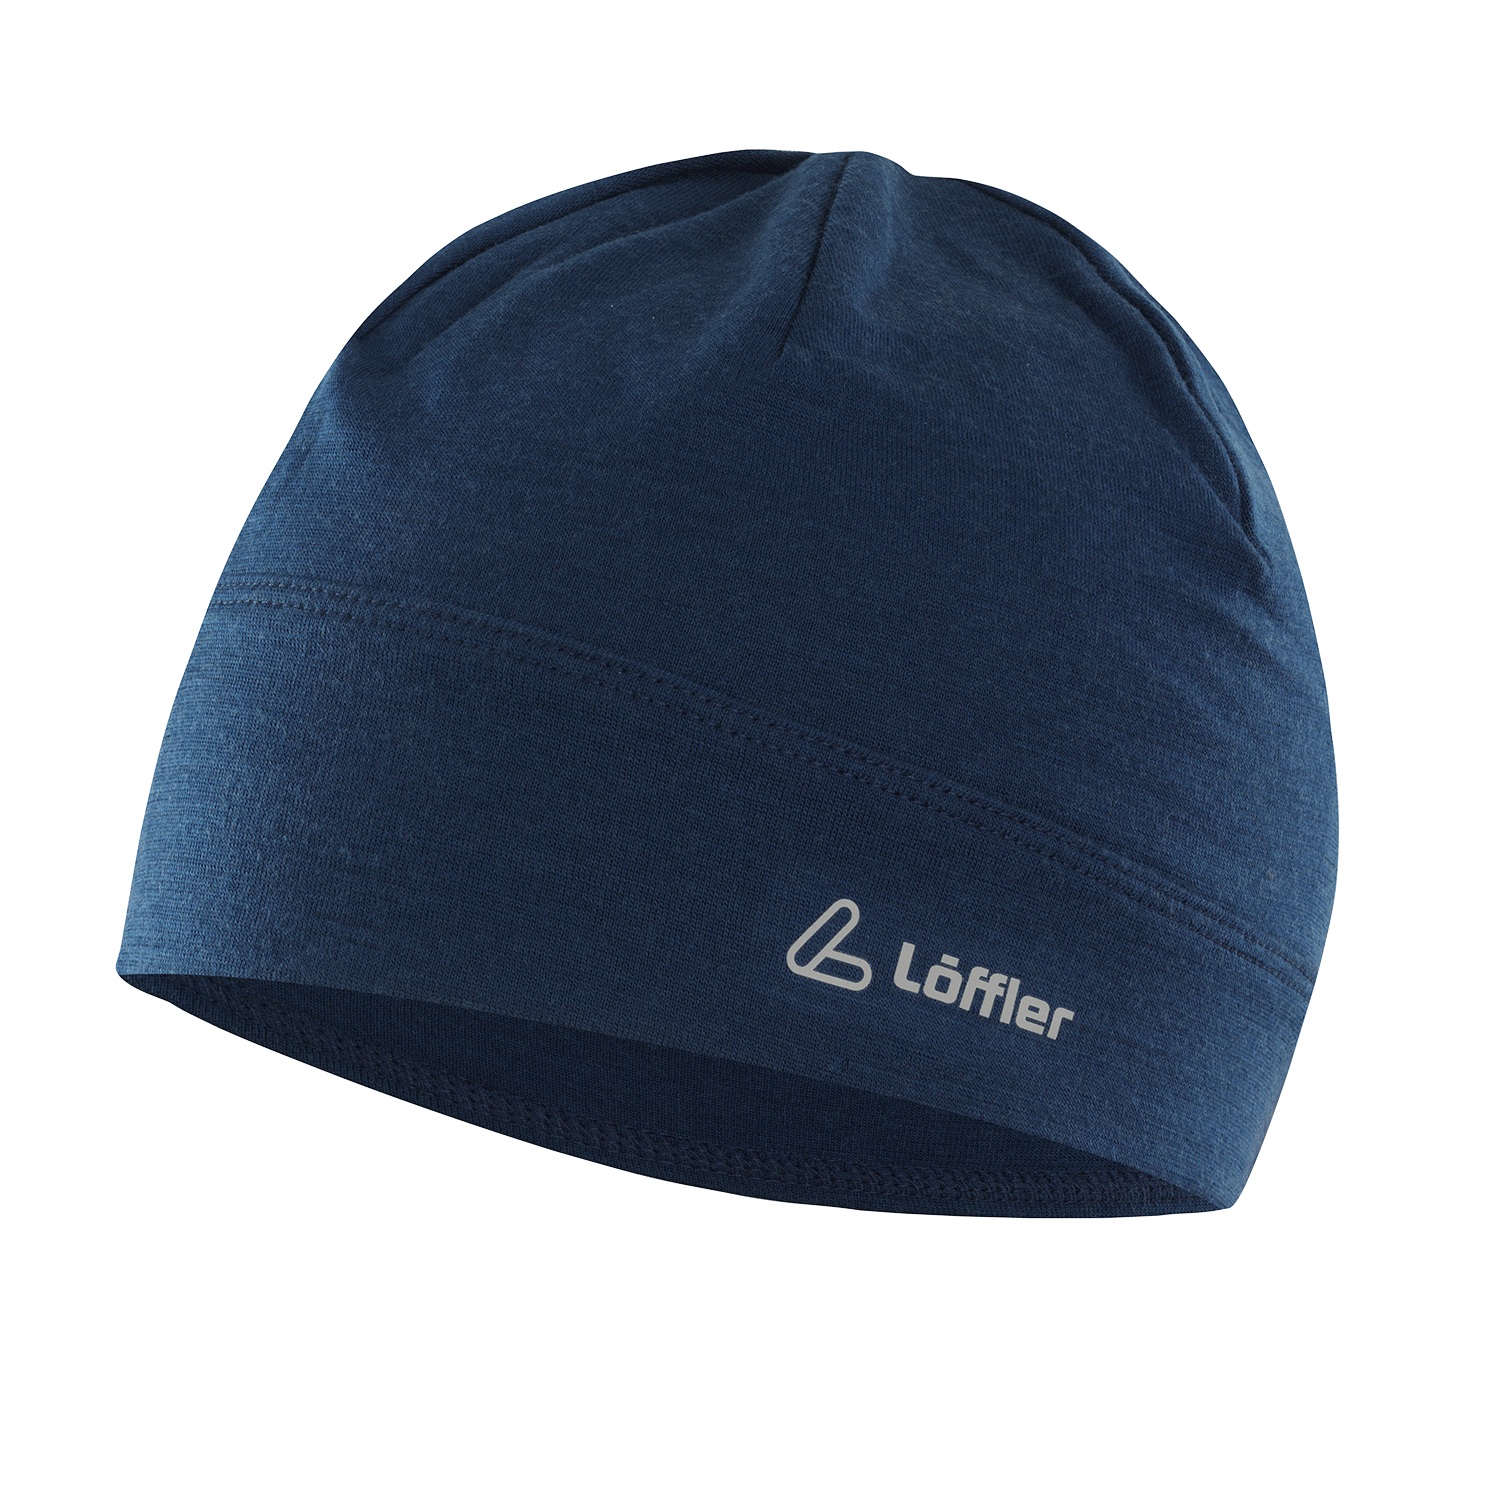 Produktbild von Löffler Merino Wool Mütze - dunkelblau 495